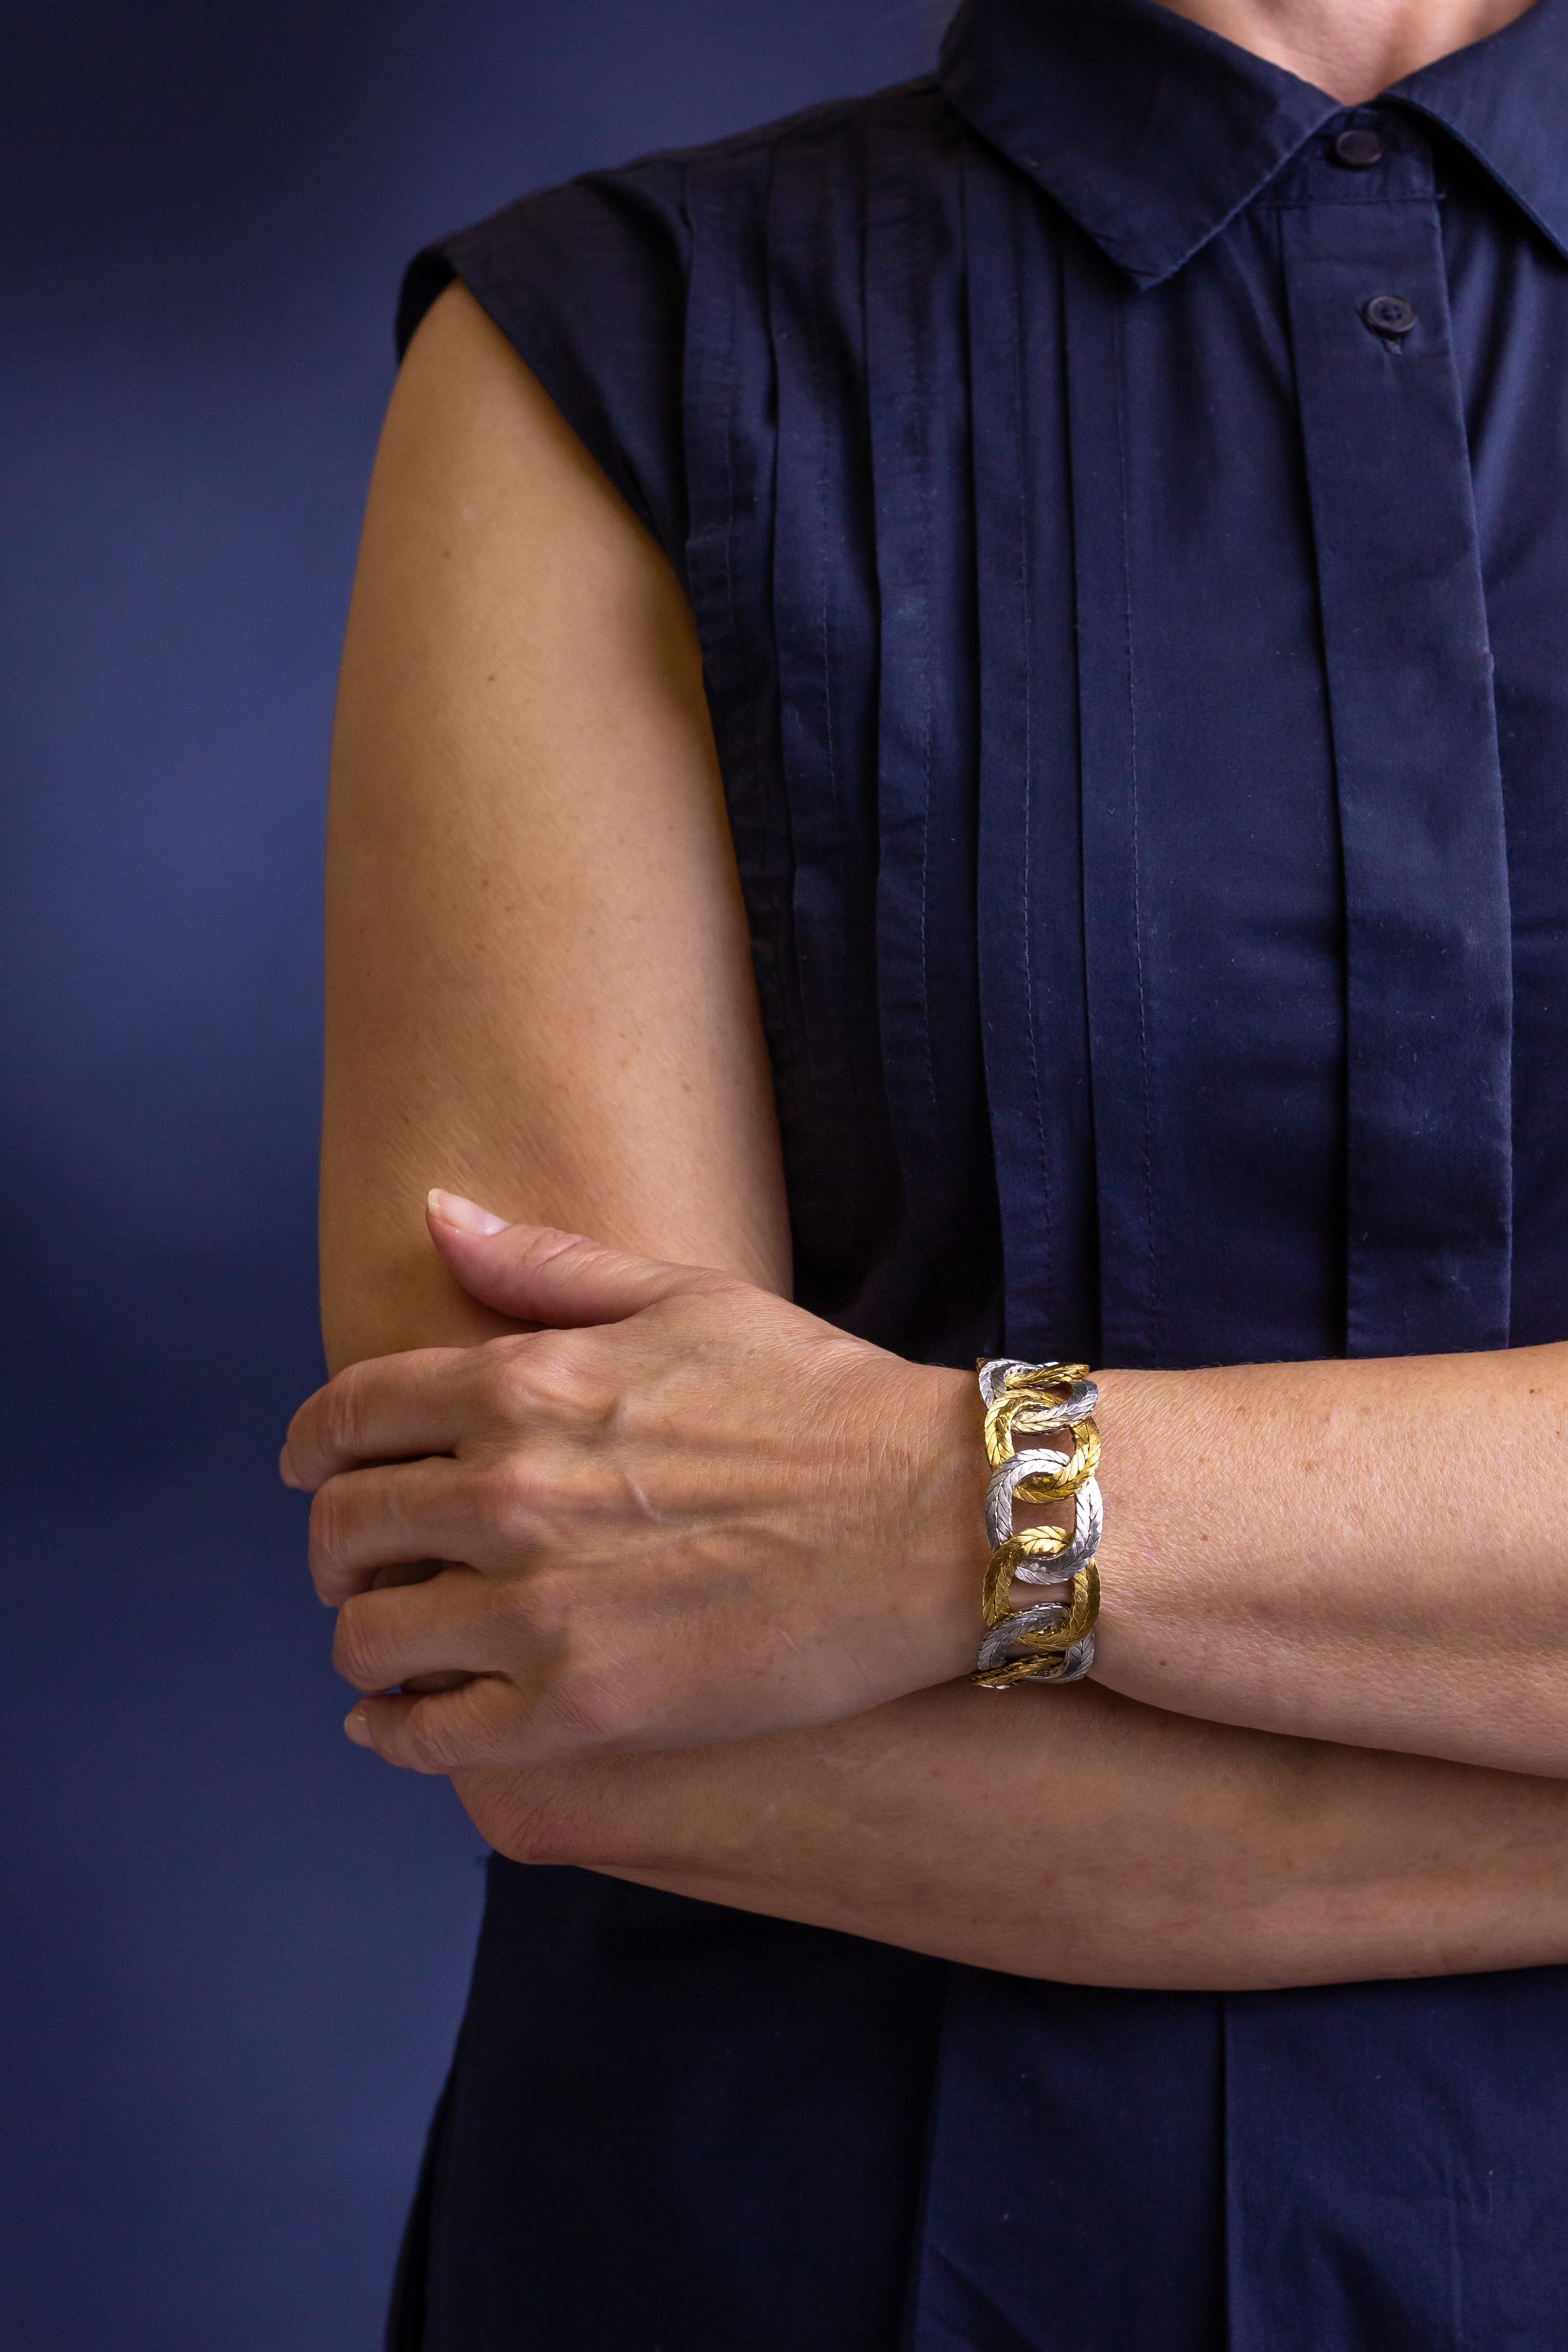 Wir freuen uns sehr, Ihnen dieses wundervolle, handgefertigte Armband von Mario Buccellati präsentieren zu können. Das zweifarbige Armband besteht aus geflochtenen Goldovalen, die abwechselnd aus 18 Karat Gelb- und 18 Karat Weißgold bestehen. Die